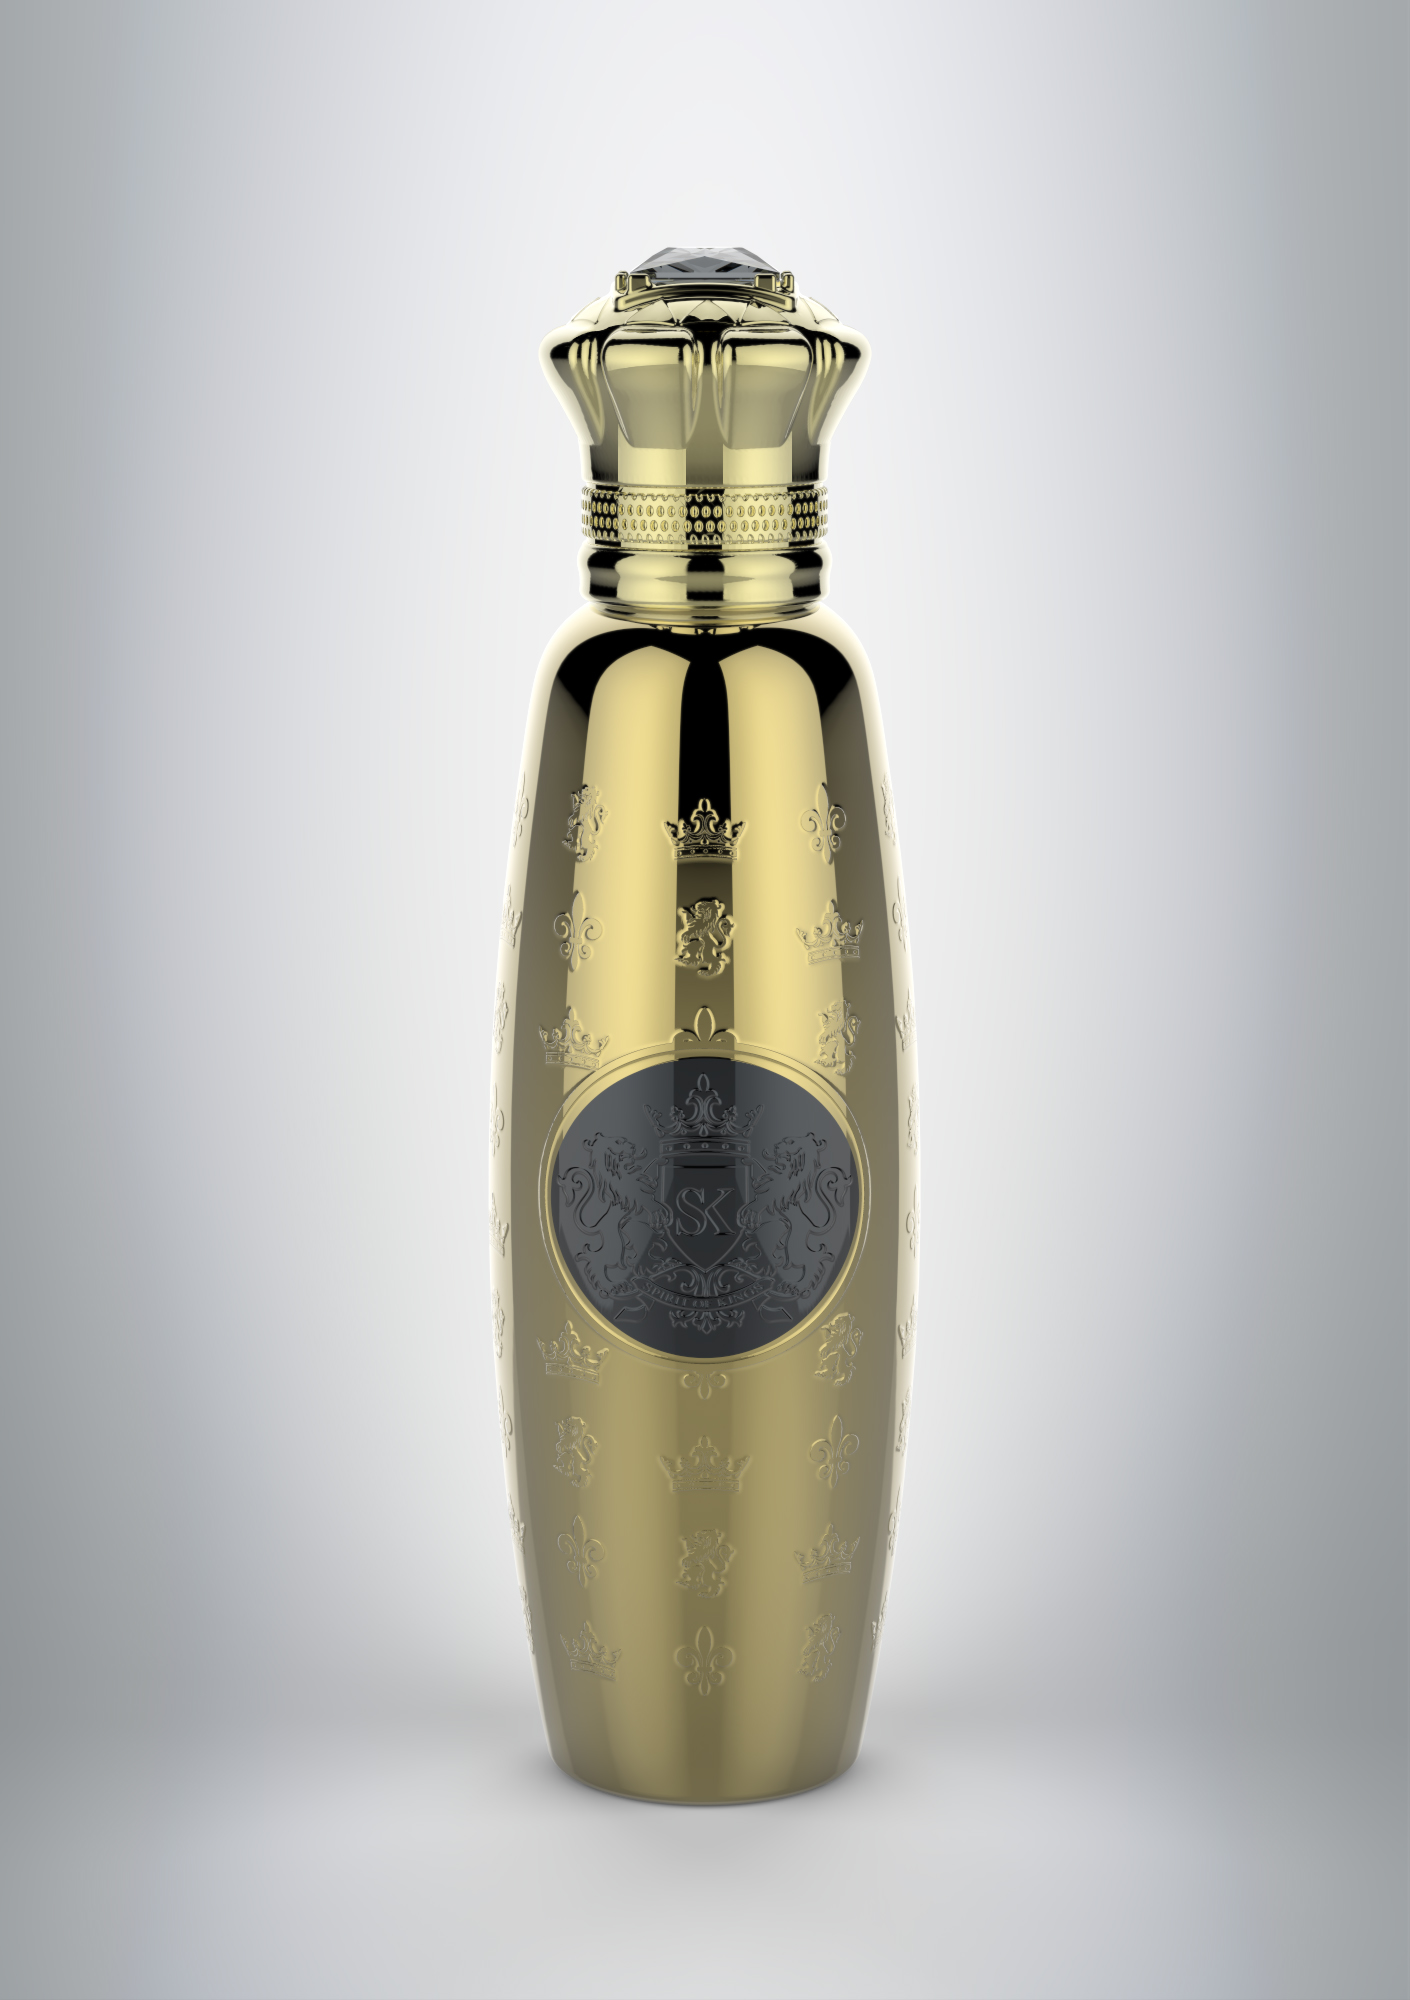 Kursa Spirit Of Kings Perfume A New Fragrance For Women And Men 19